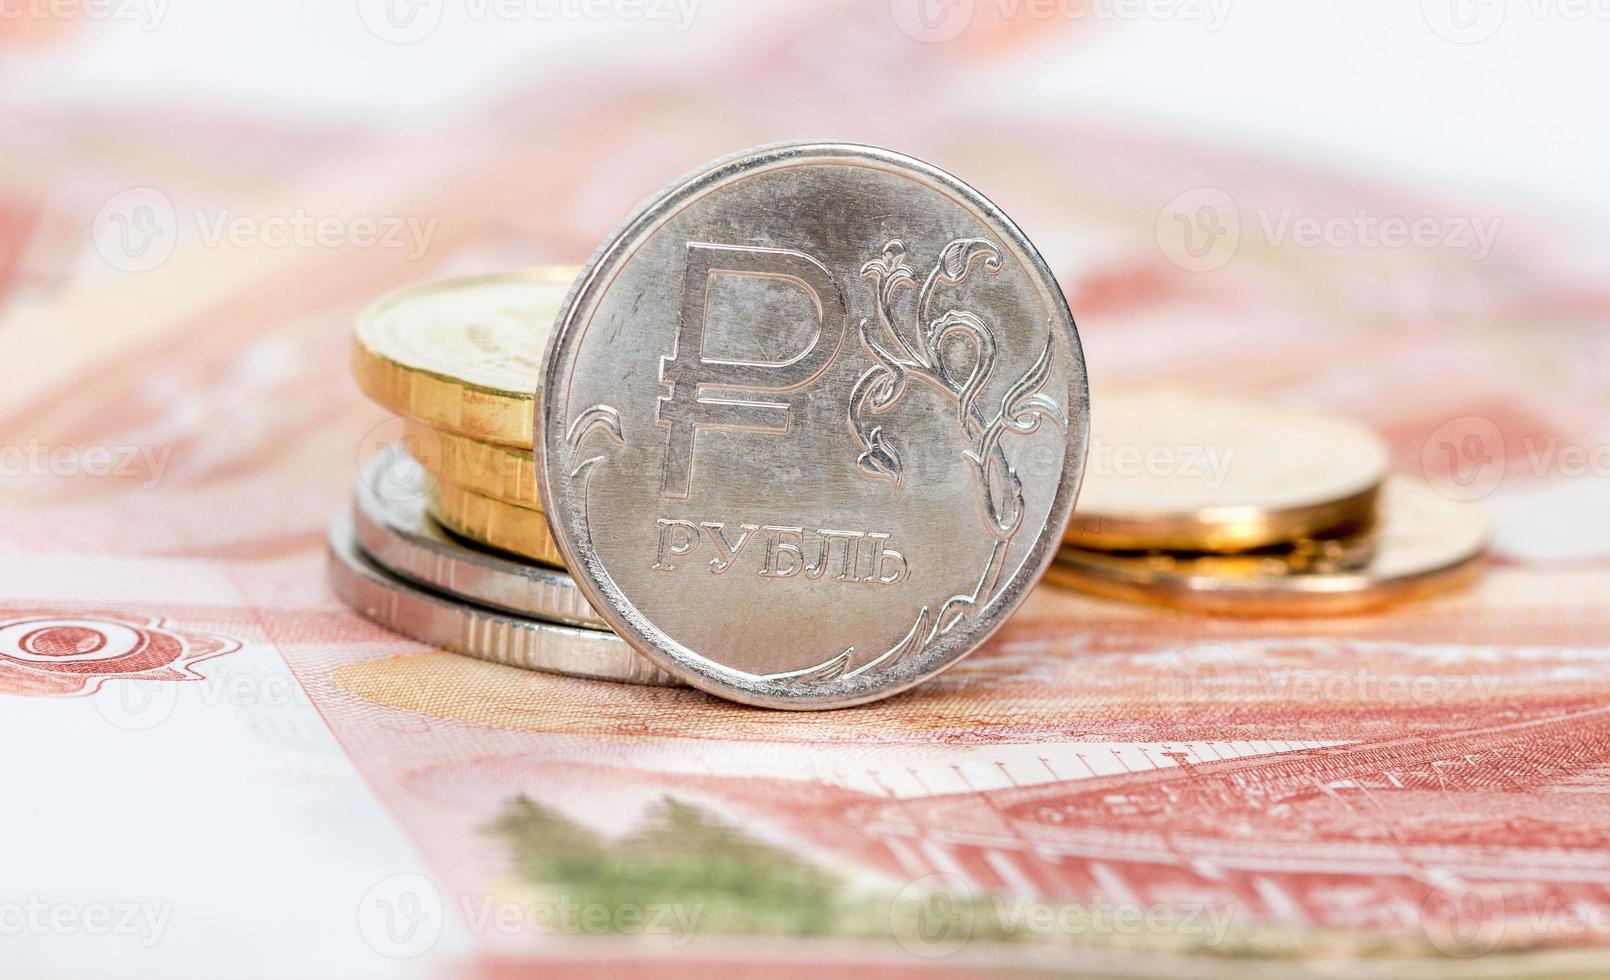 Russische valuta, roebel: bankbiljetten en munten close-up foto